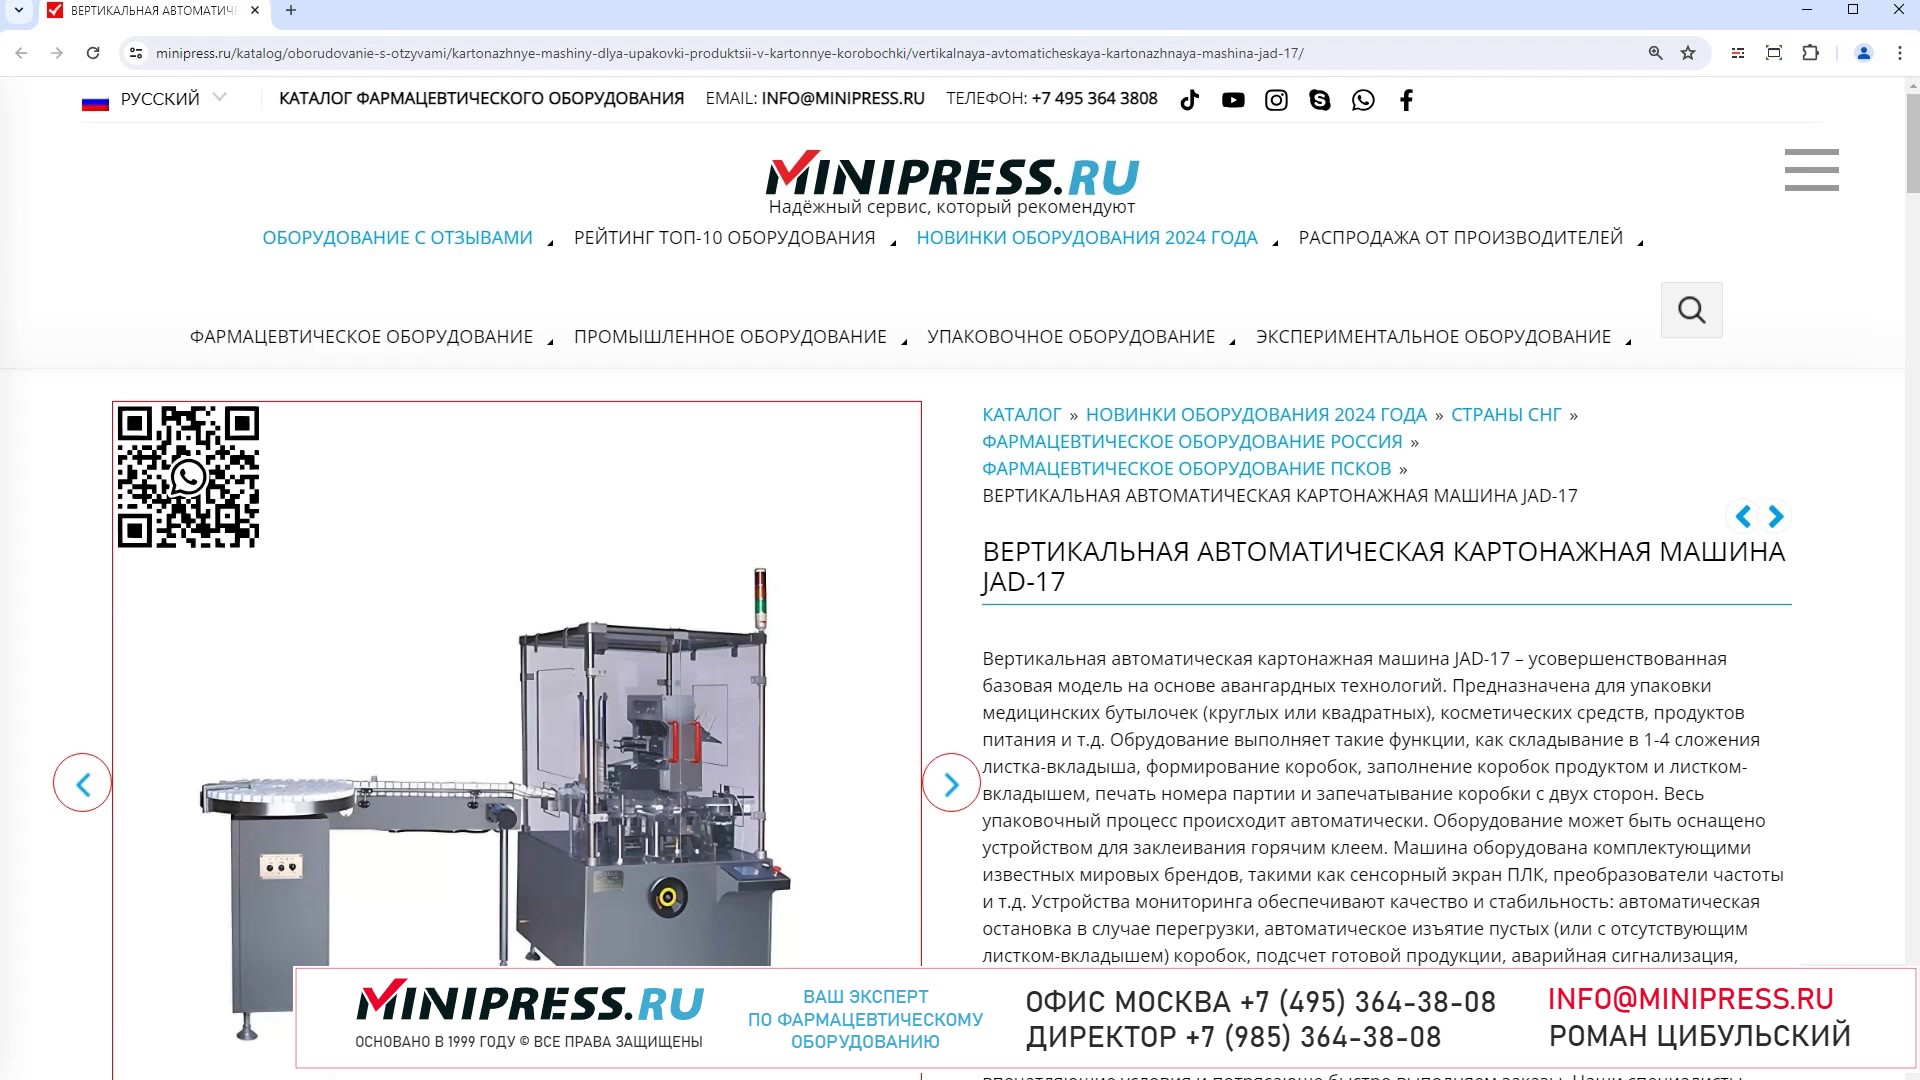 Minipress.ru Вертикальная автоматическая картонажная машина JAD-17